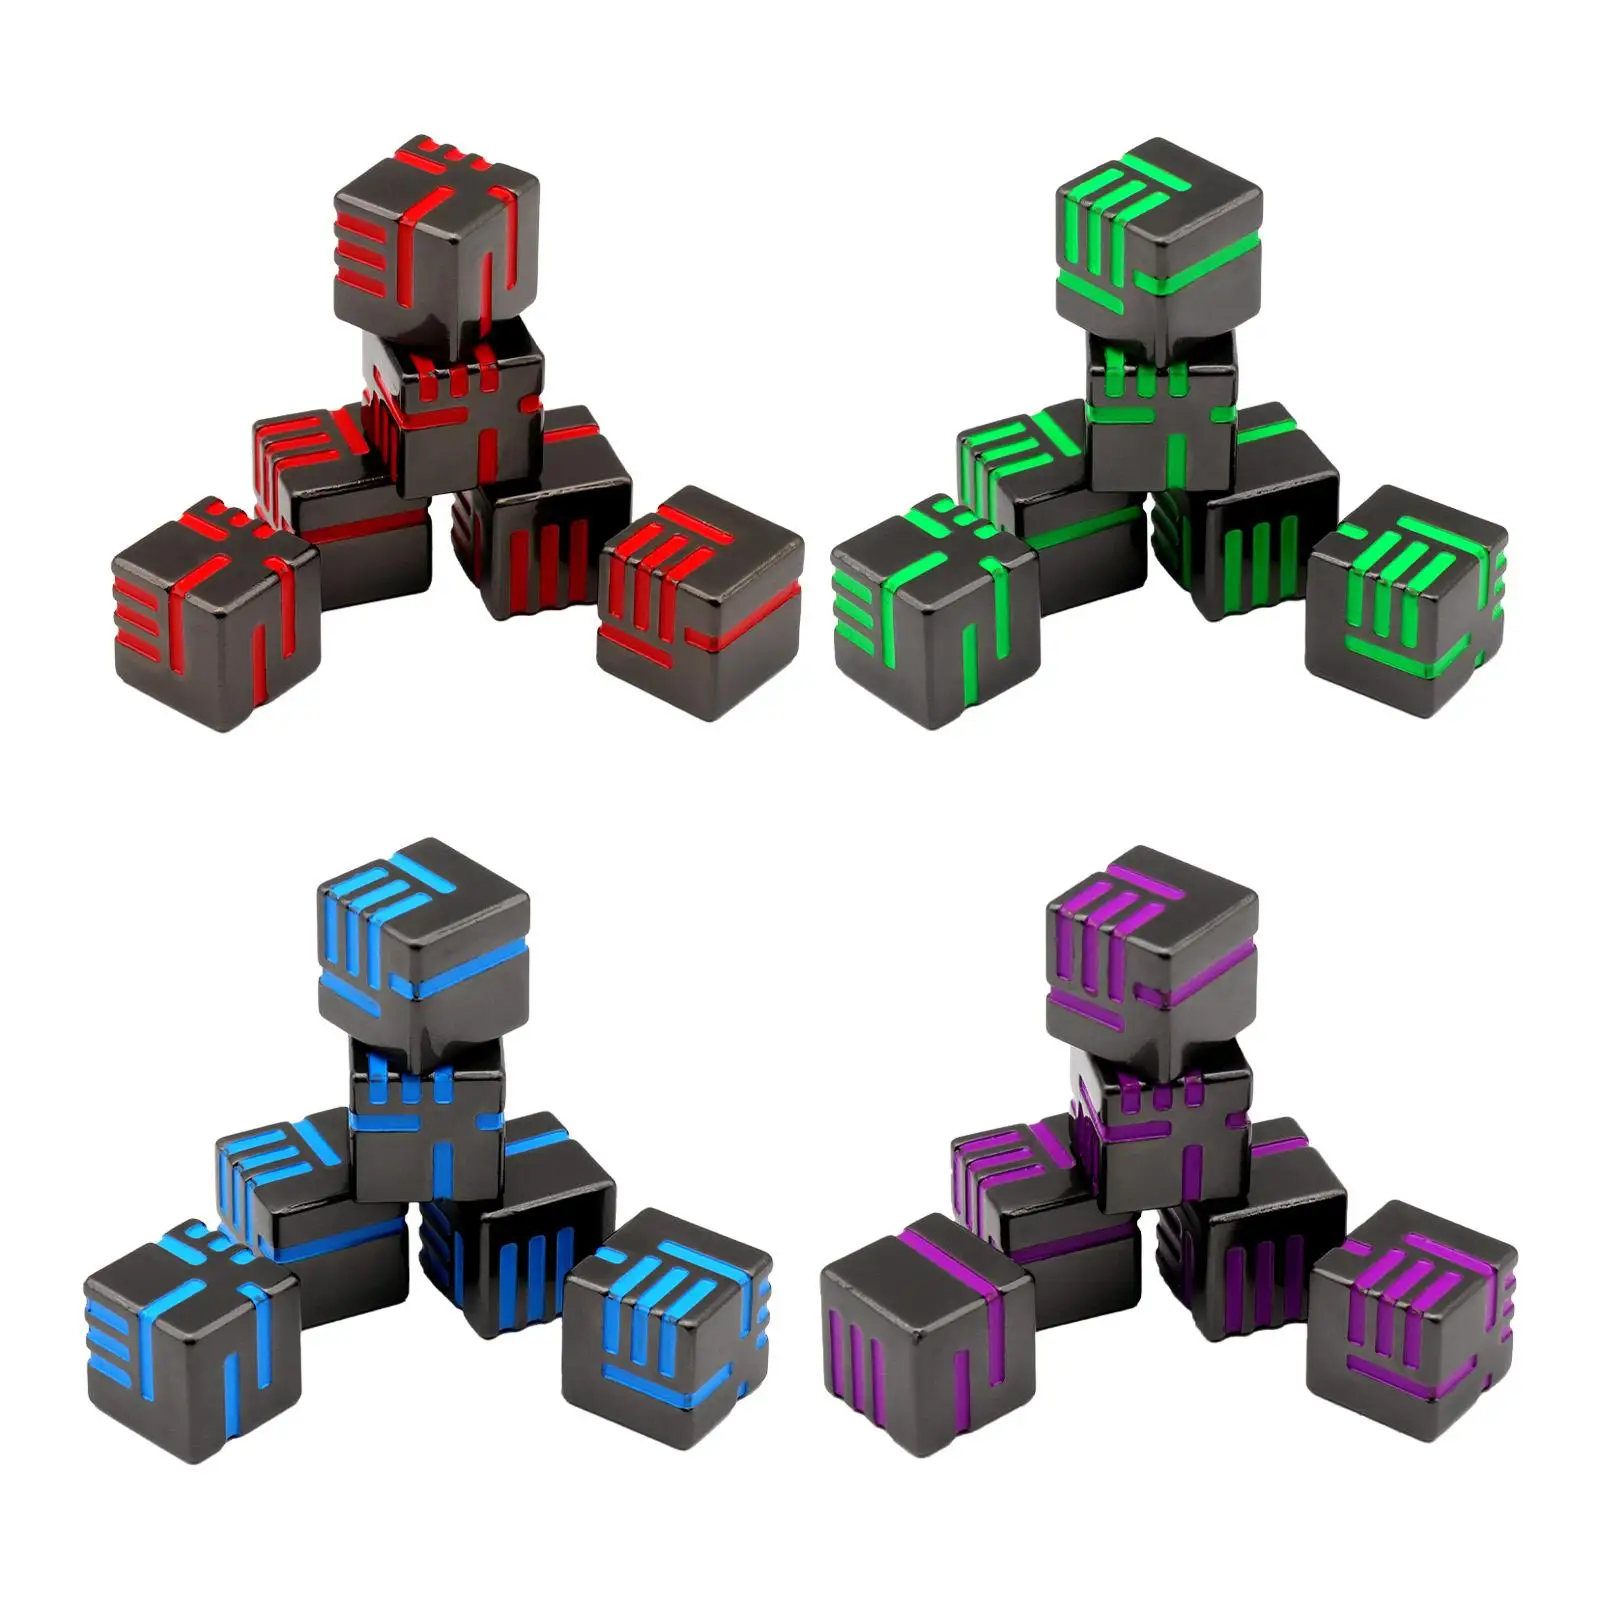 

Игрушка-пазл, многоцветный игровой набор, крутая развивающая игрушка, Забавный Уникальный дизайн, многогранные игральные кости, наборы для настольных игр, набор из 6 металлических костей